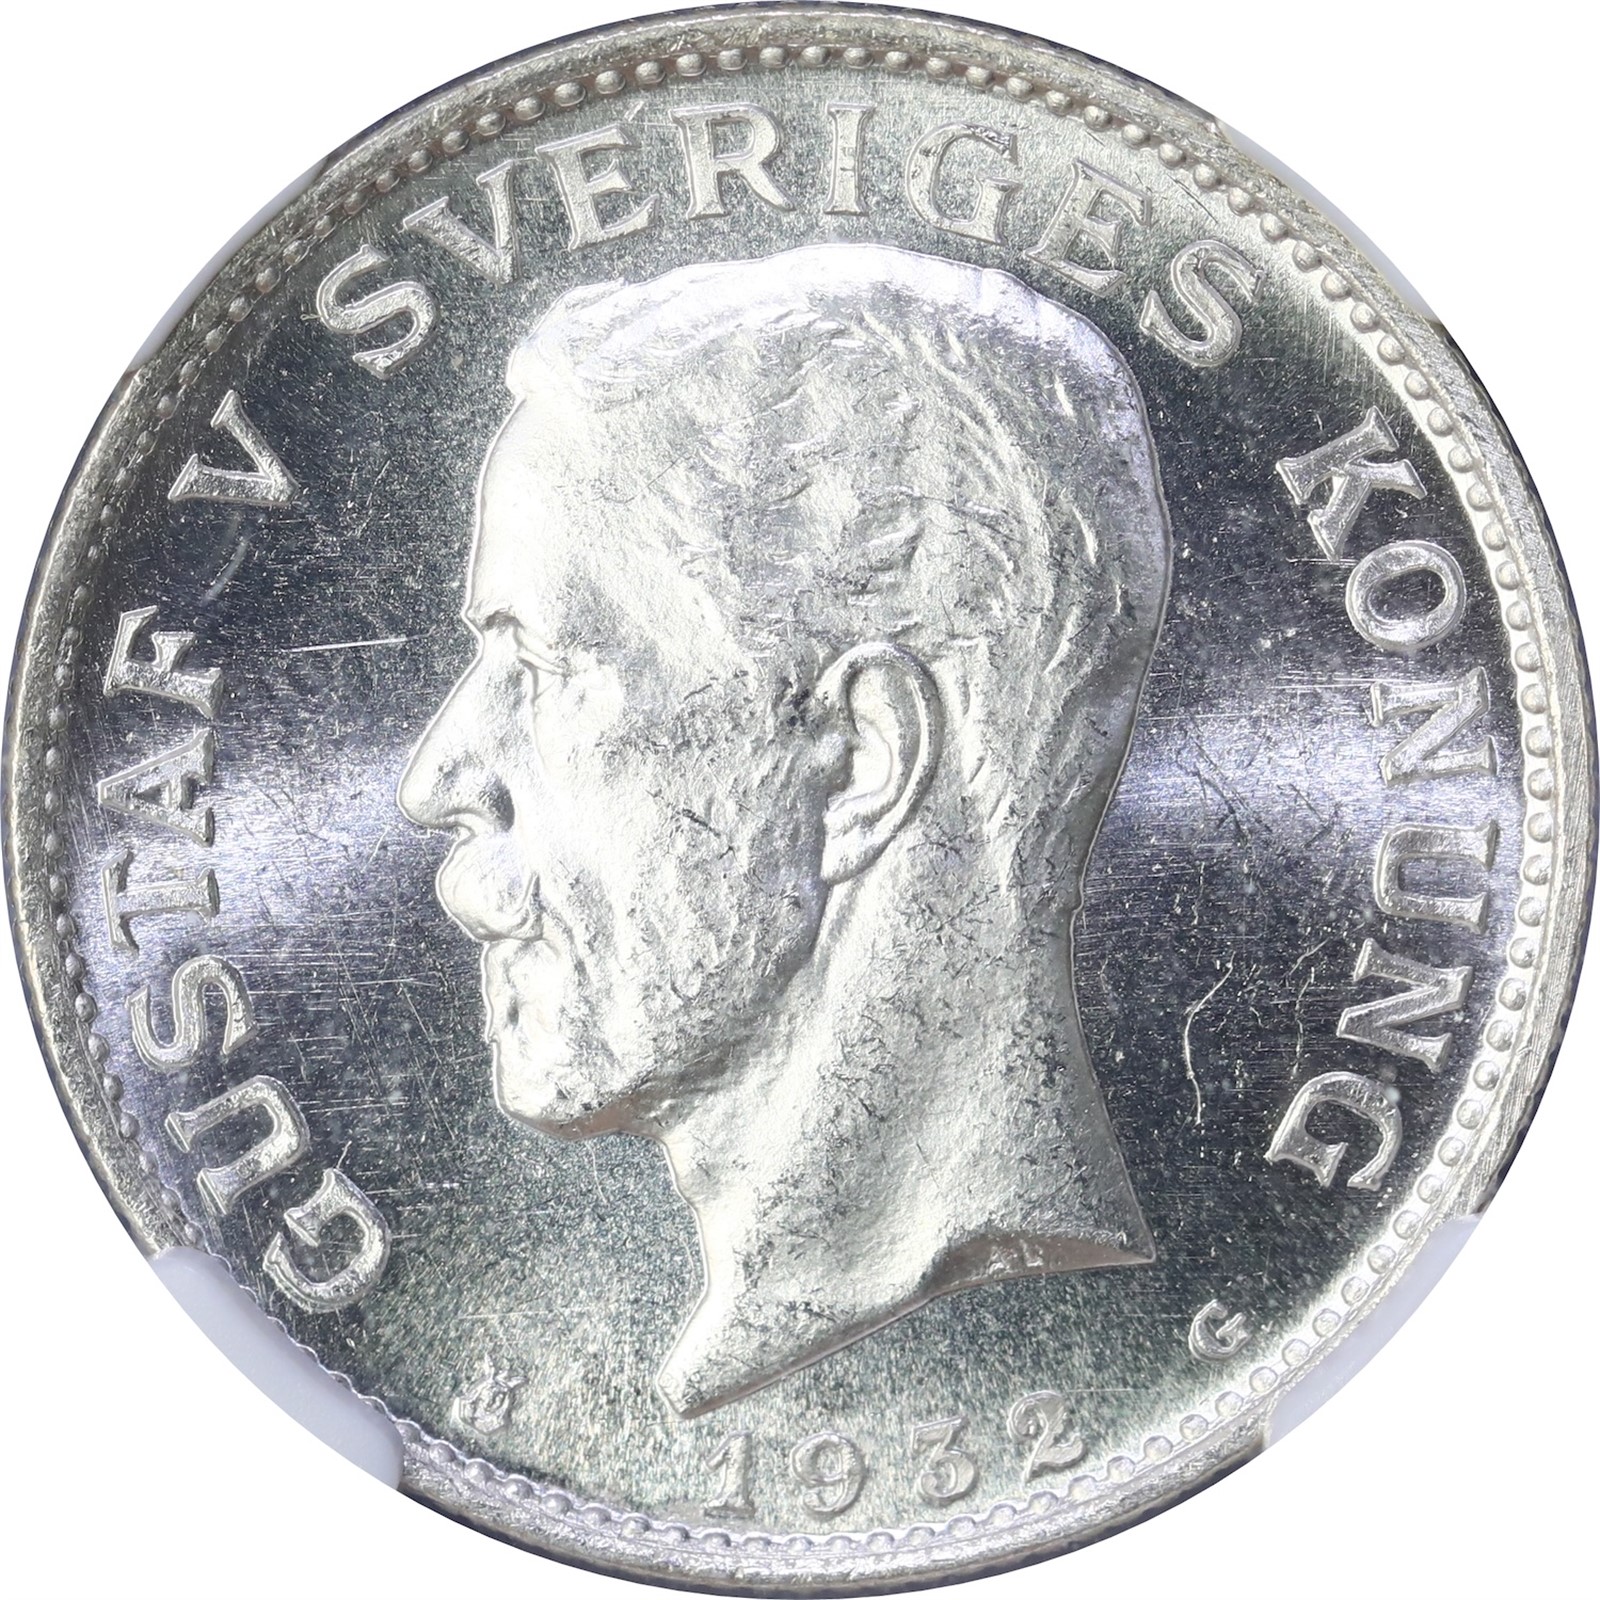 SWEDEN. Gustav V. 1 Krona 1932 NGC MS64